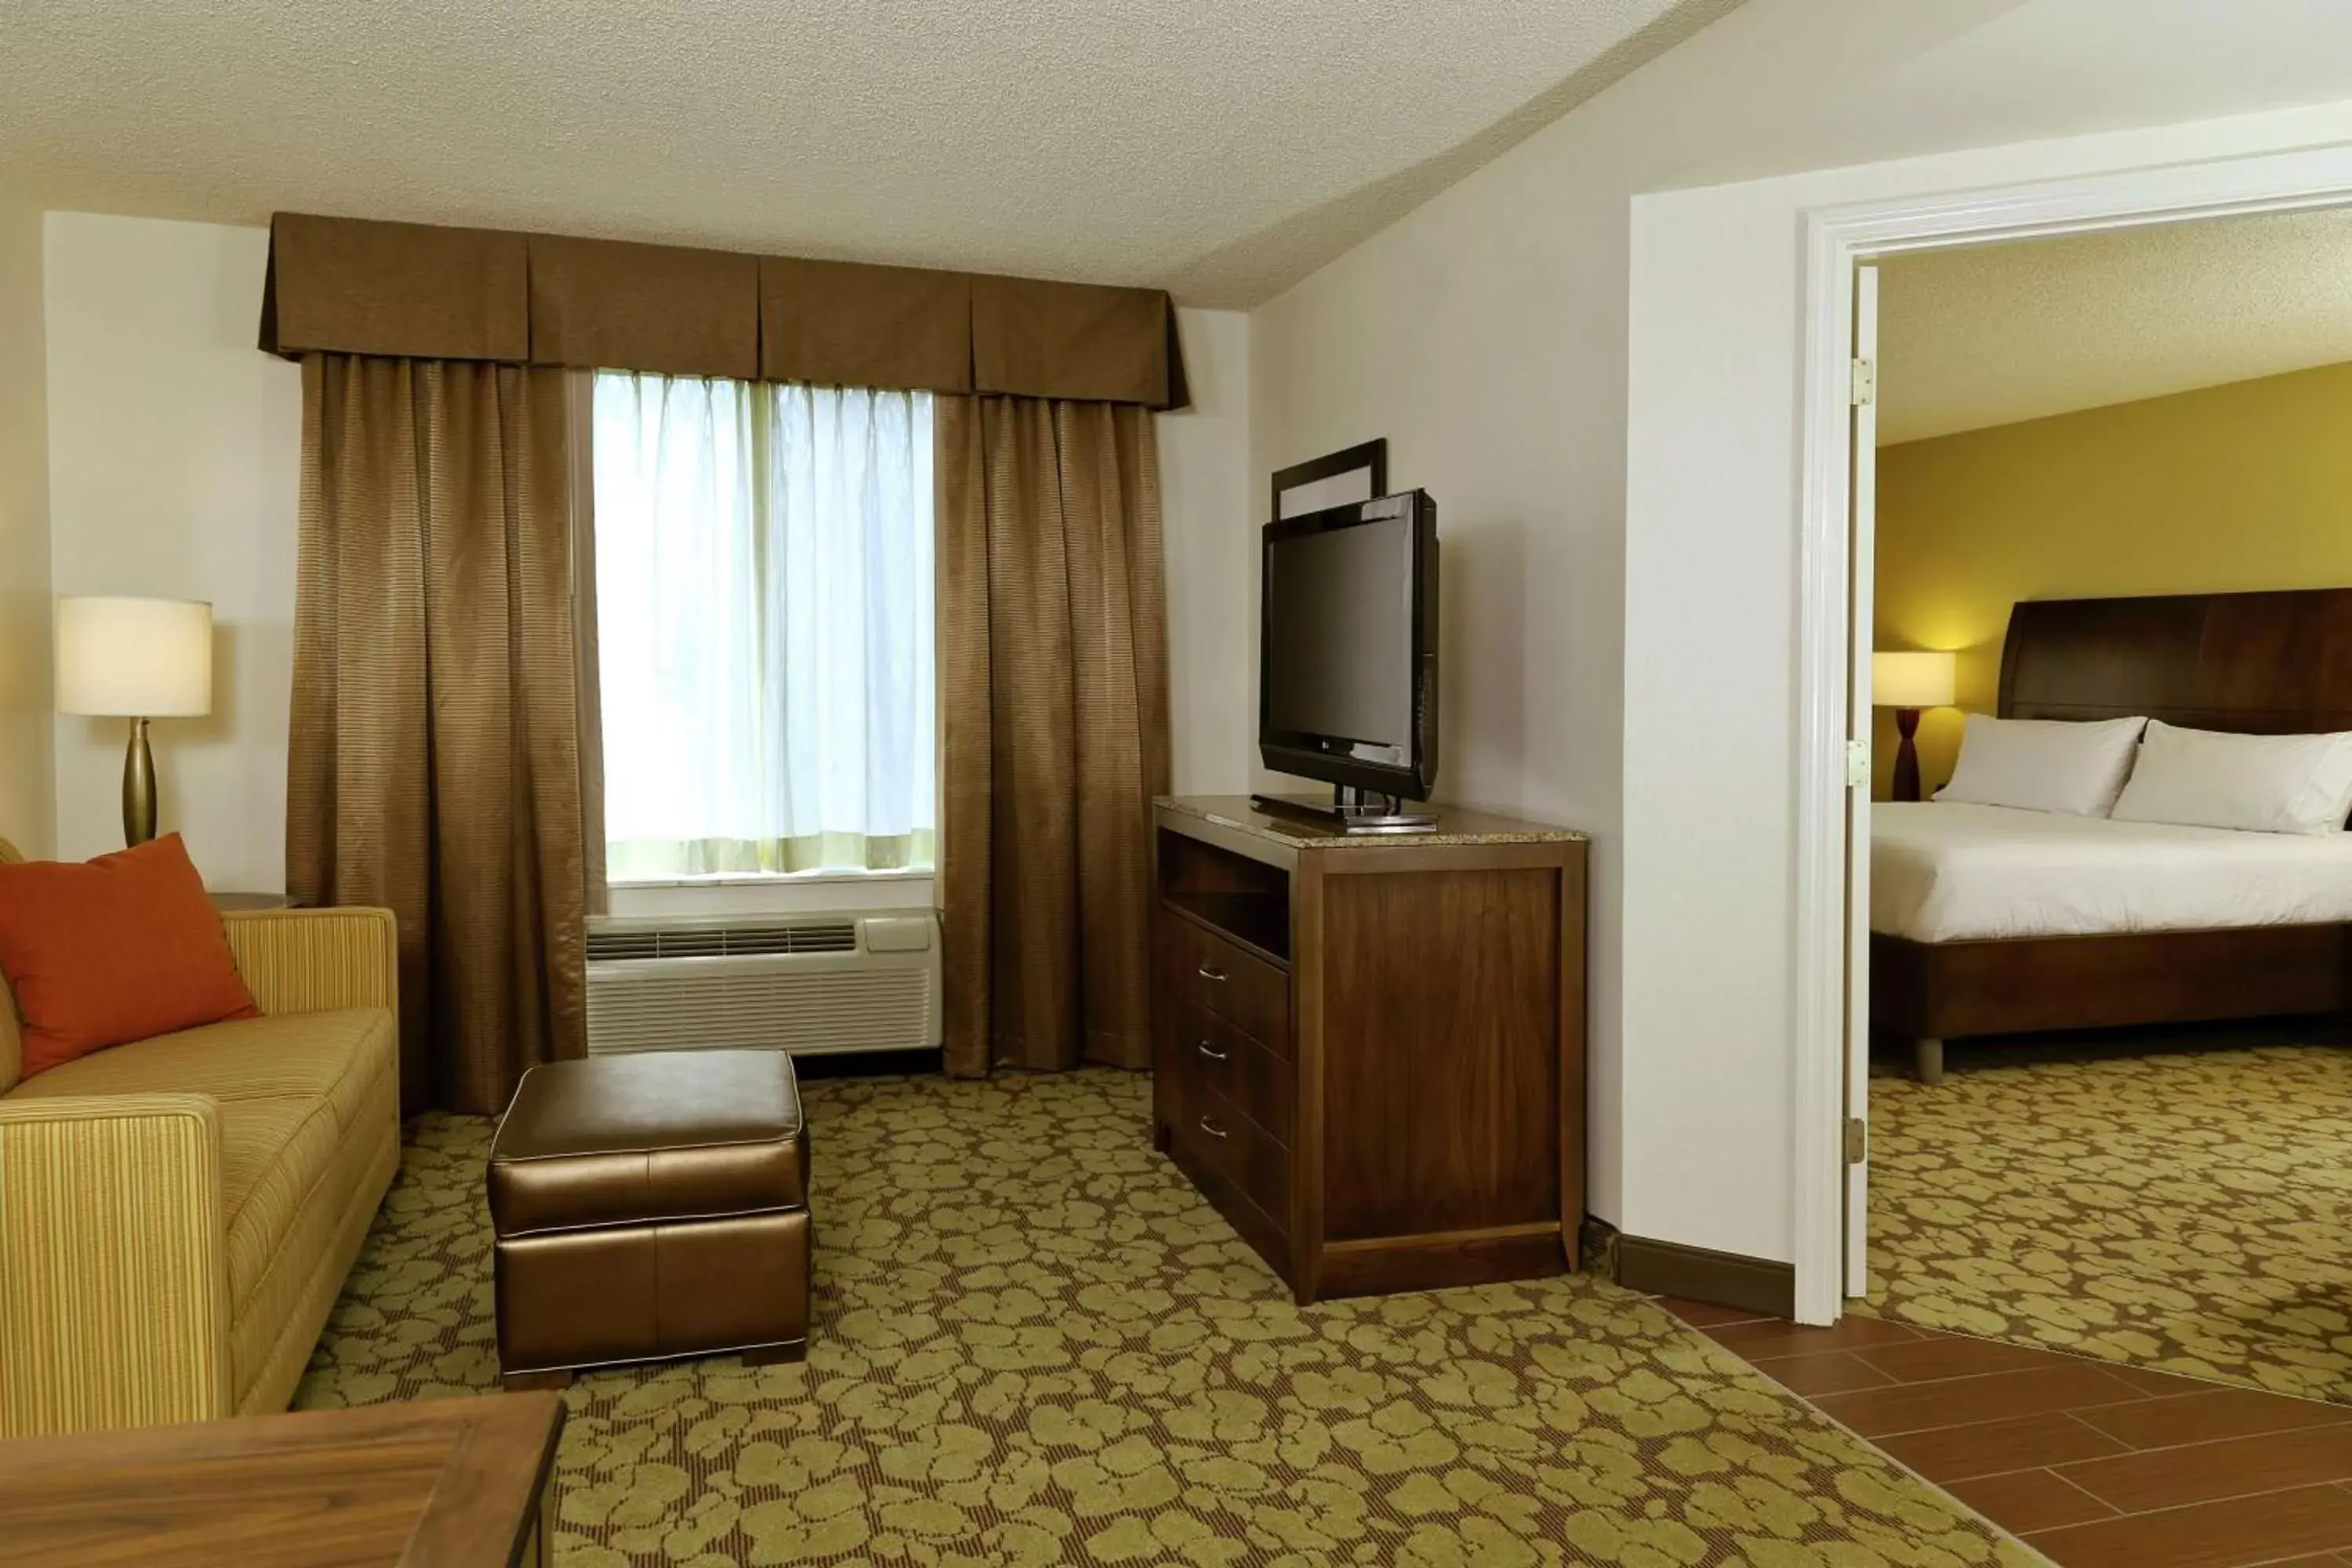 Bedroom, TV/Entertainment Center in Hilton Garden Inn Tampa East Brandon